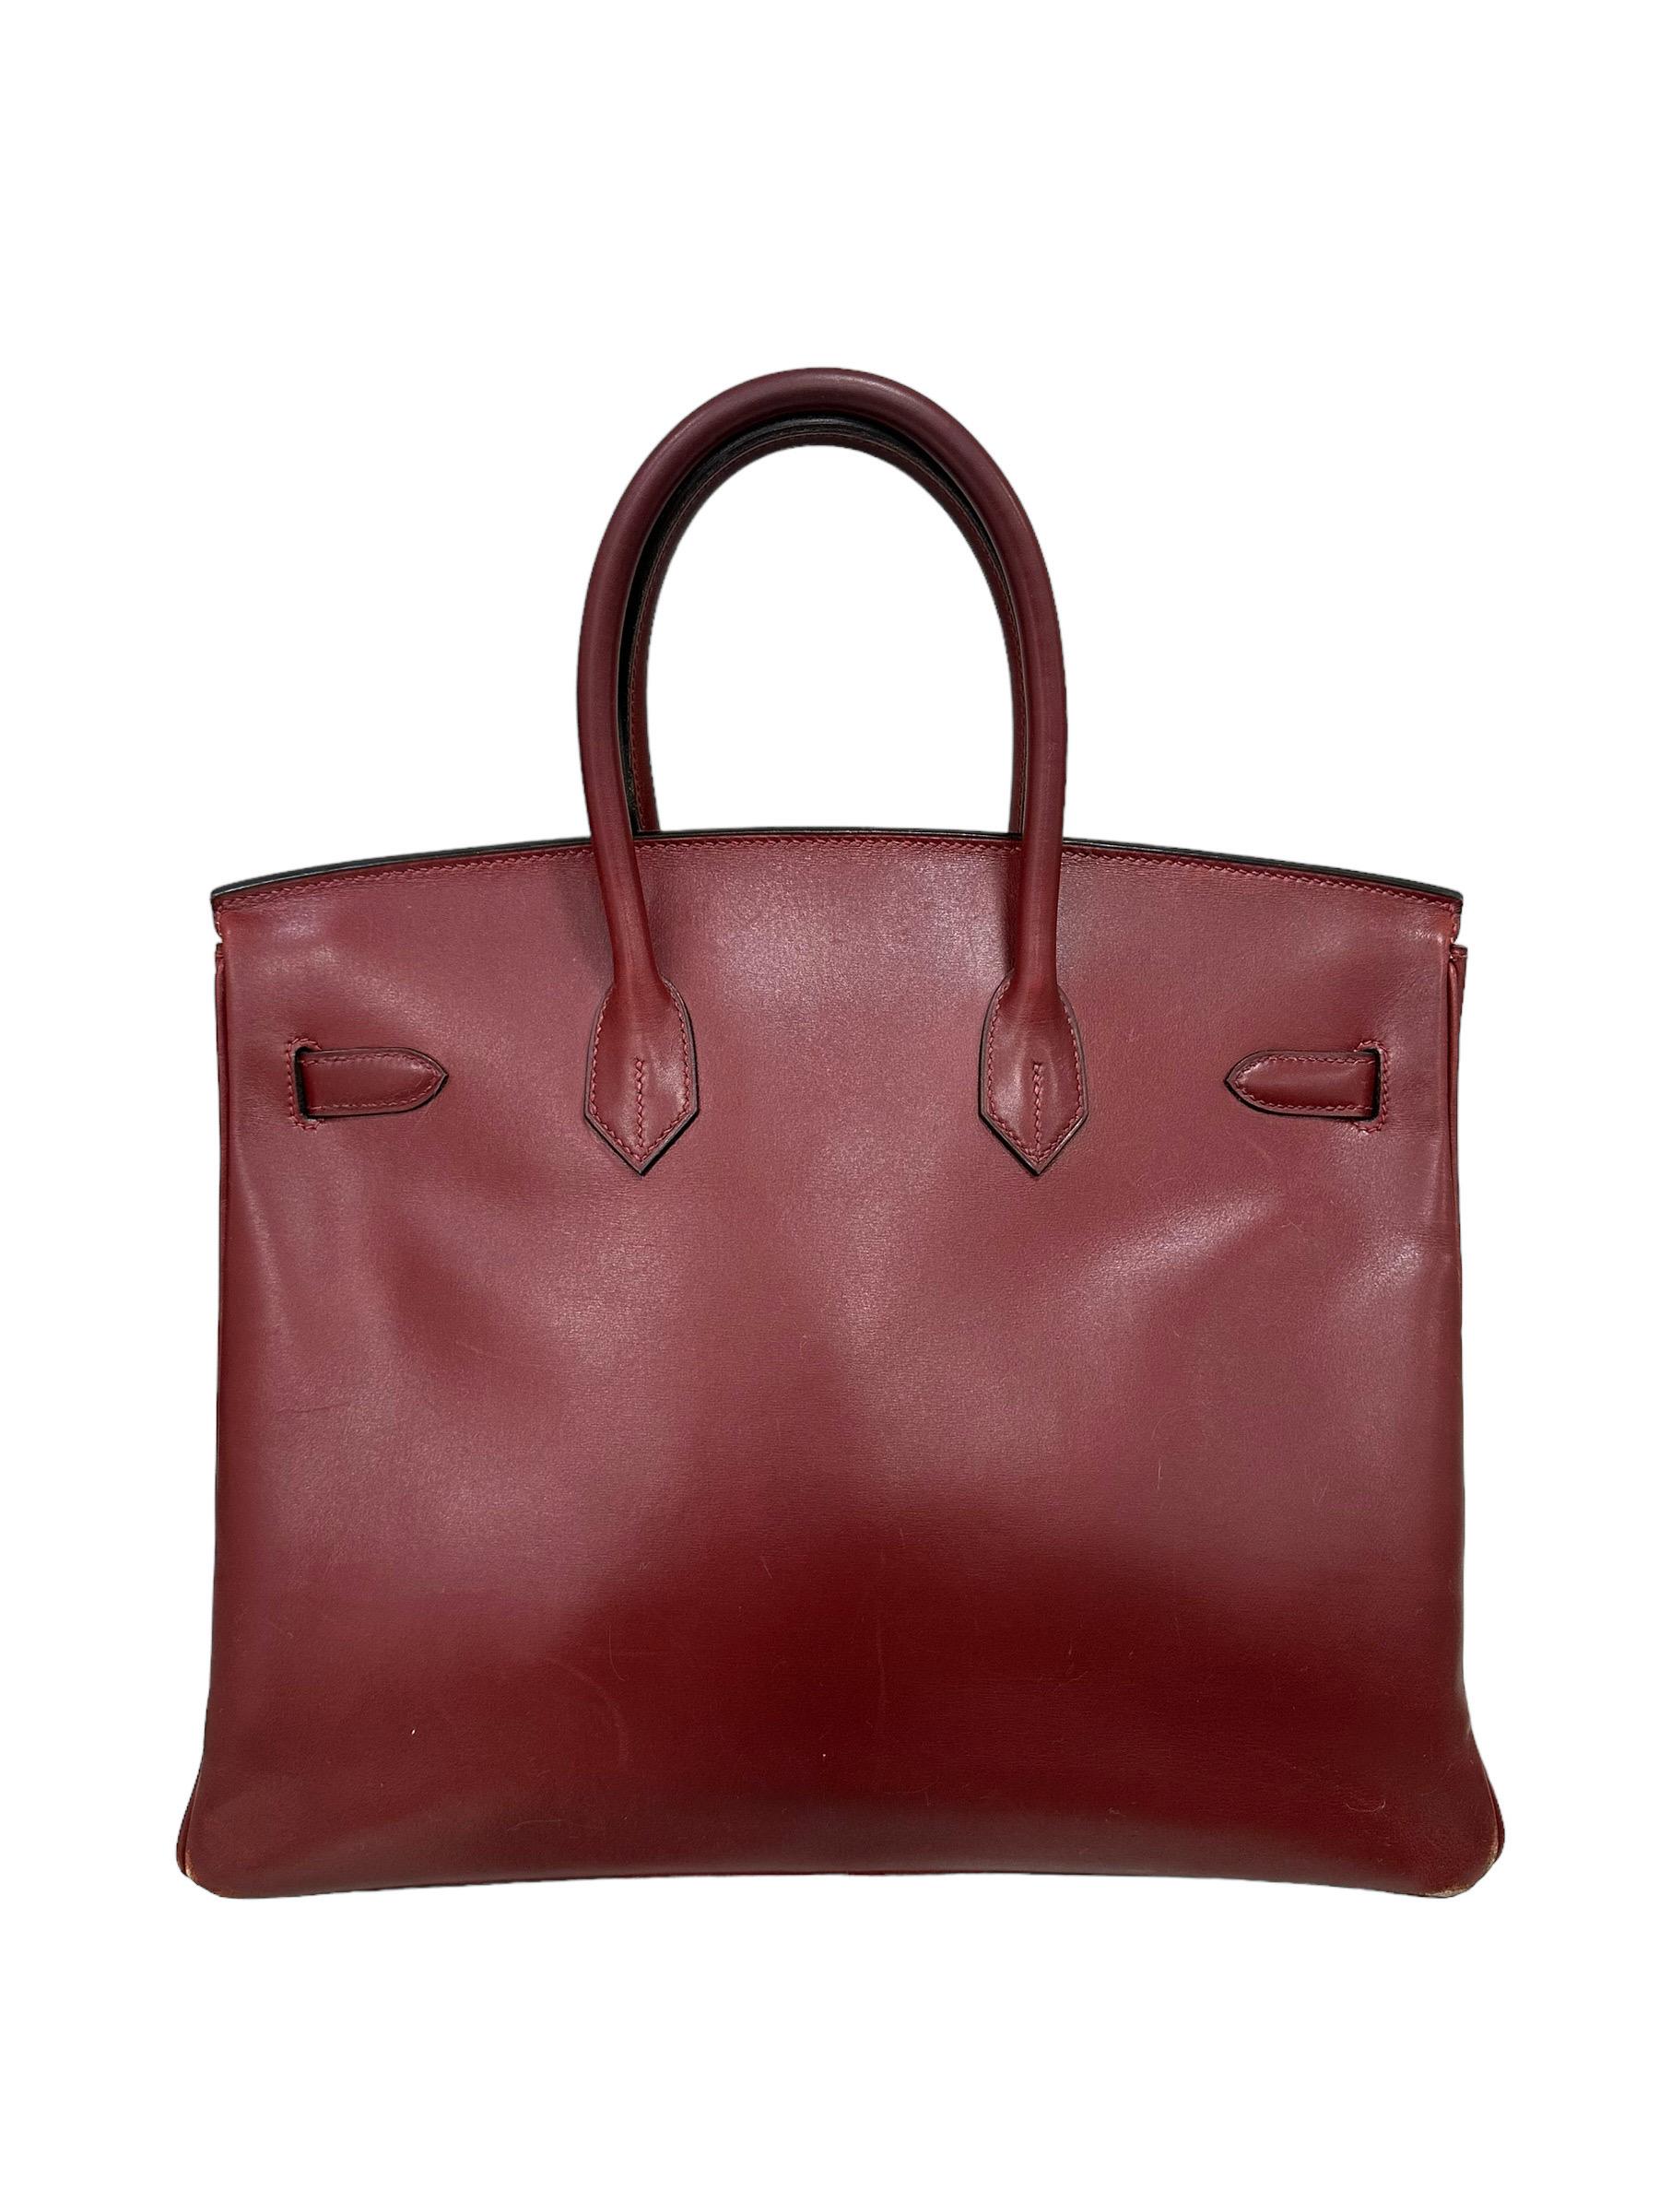 Hermès Birkin 35 Evercalf Rouge Garance Top Handle Bag 4